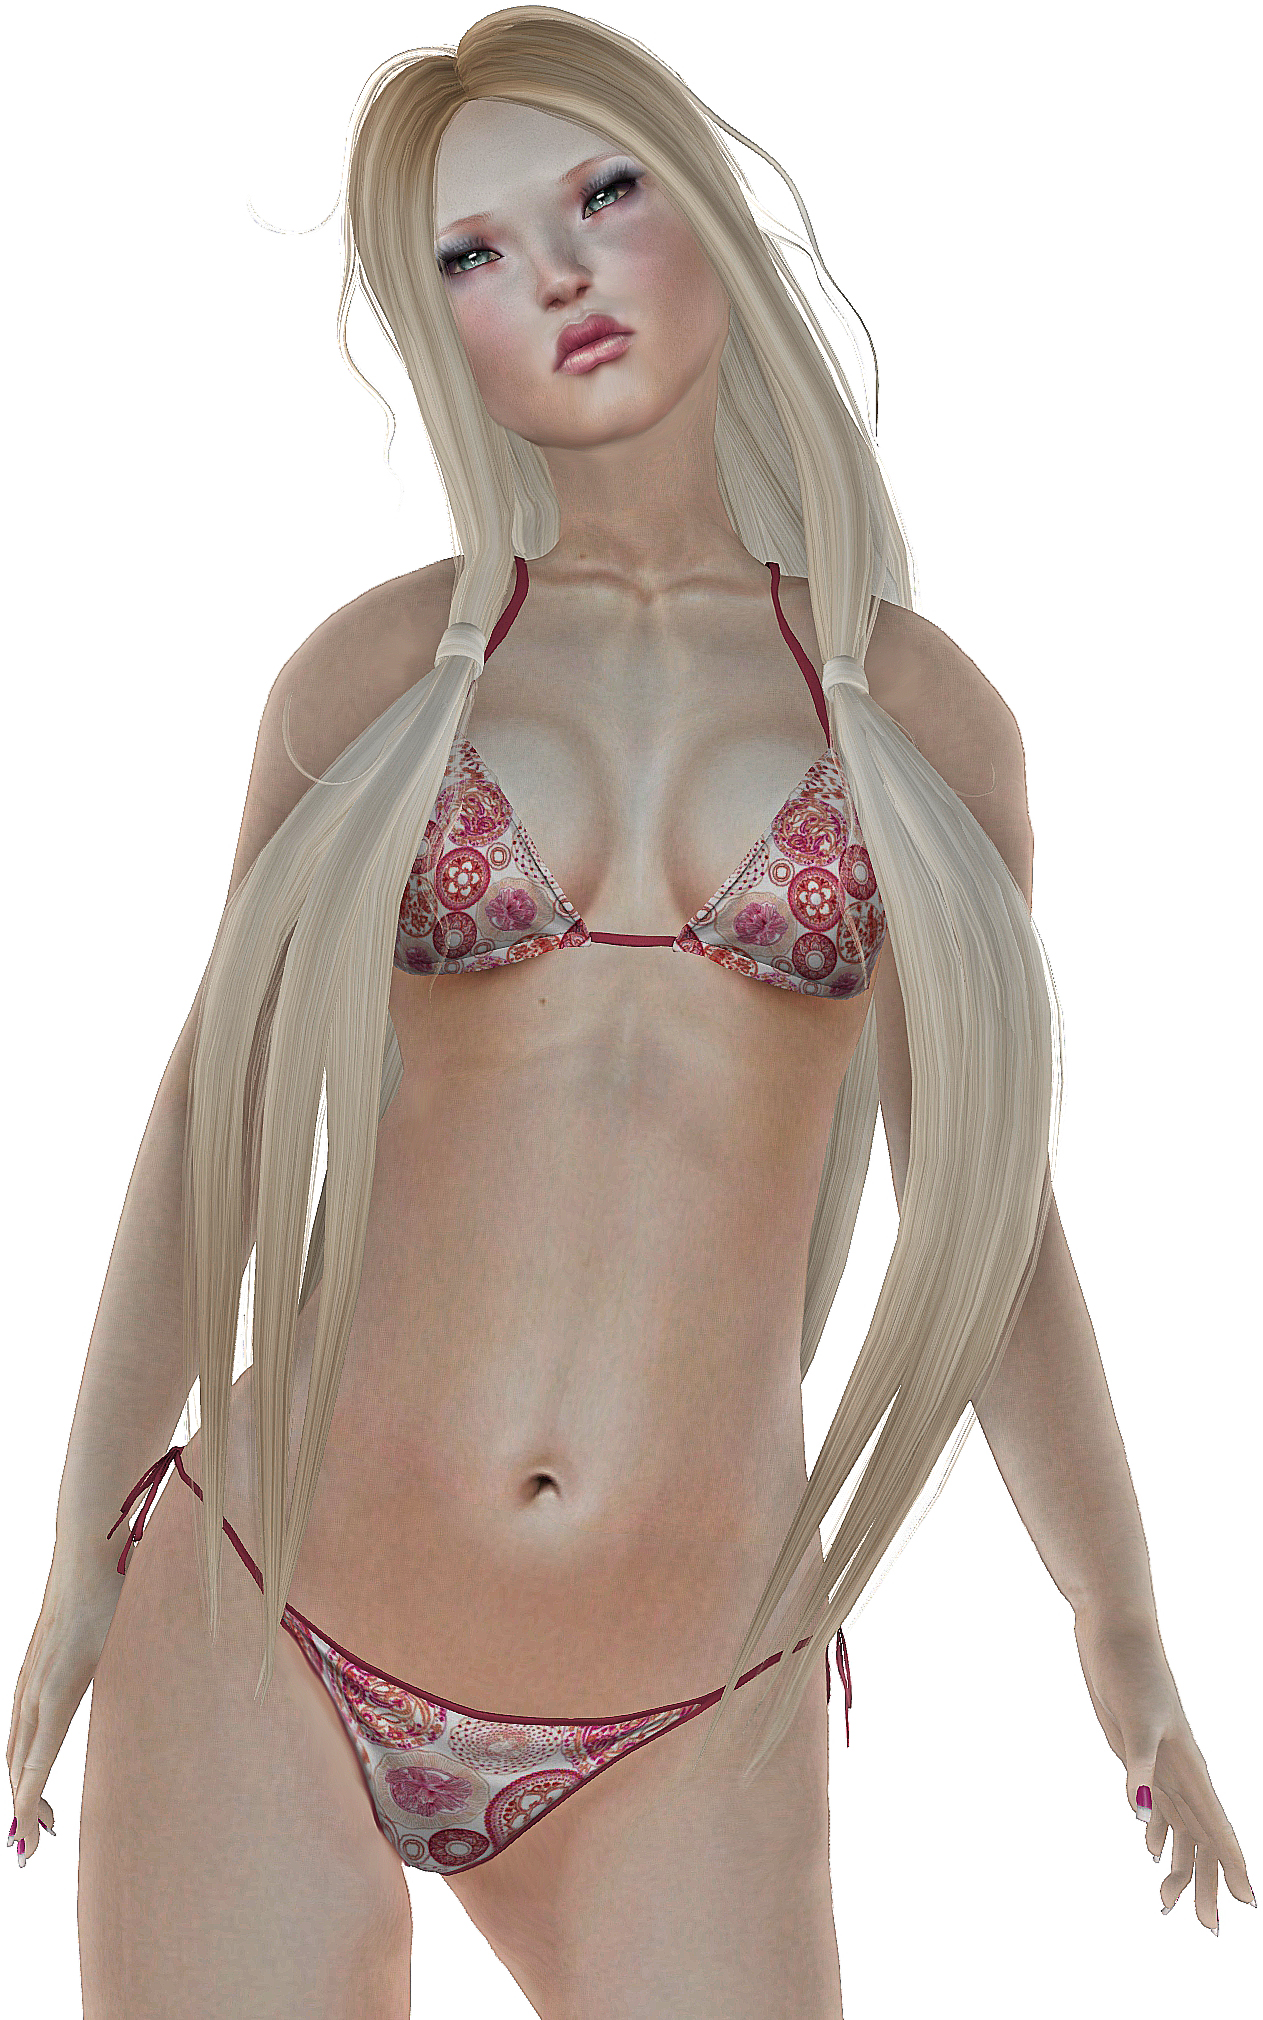 a girl in a bikini with very big 